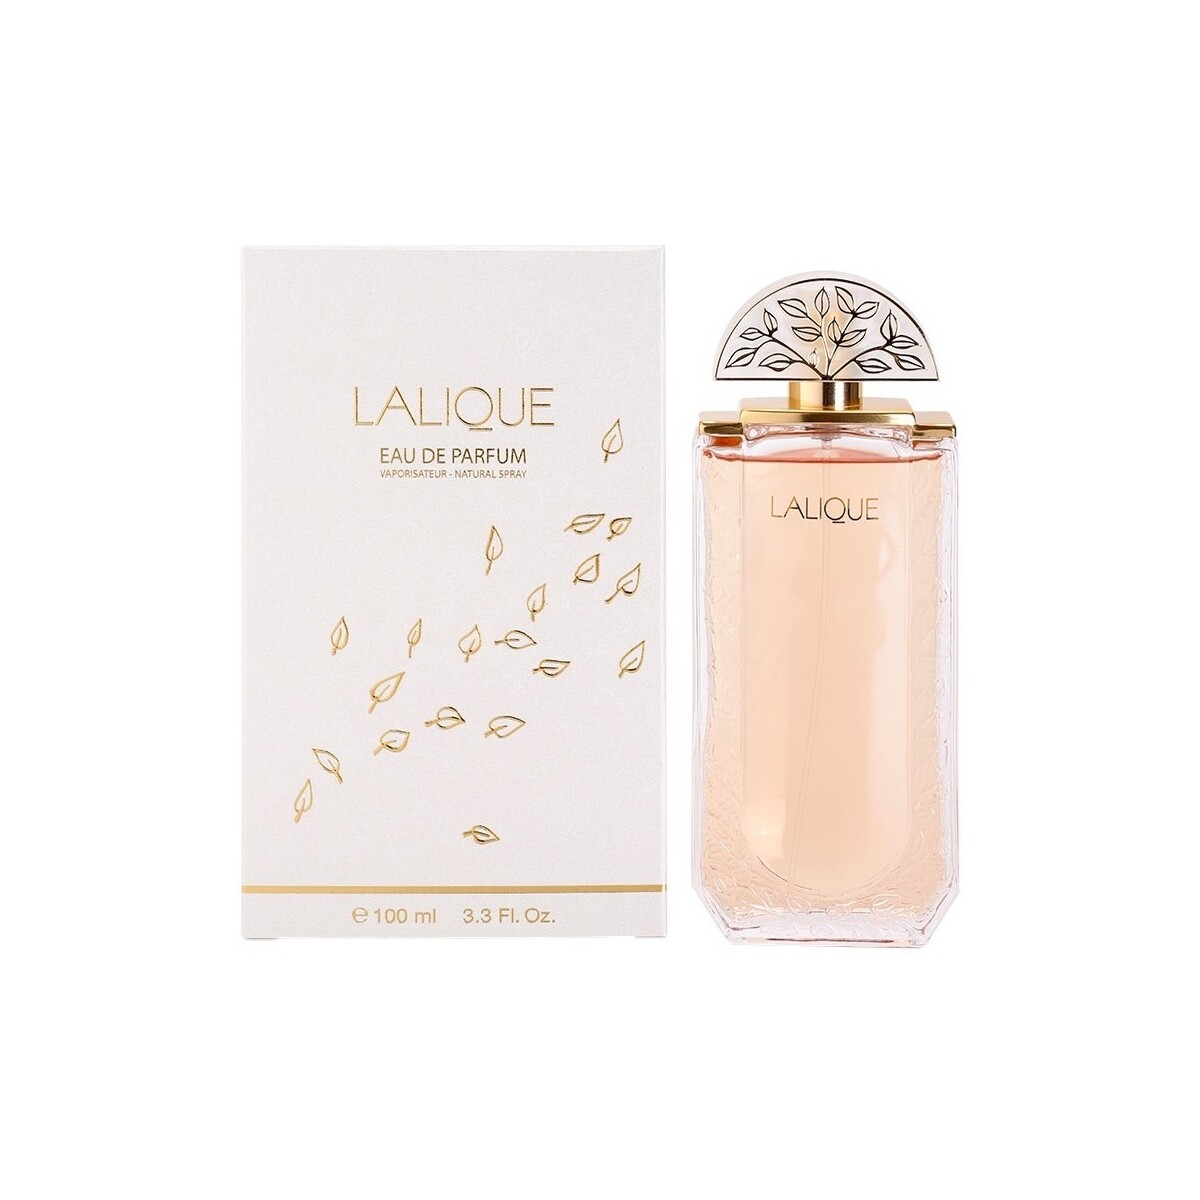 Beauty Damen Eau de parfum  Lalique - Parfüm - 100ml - VERDAMPFER Lalique - perfume - 100ml - spray